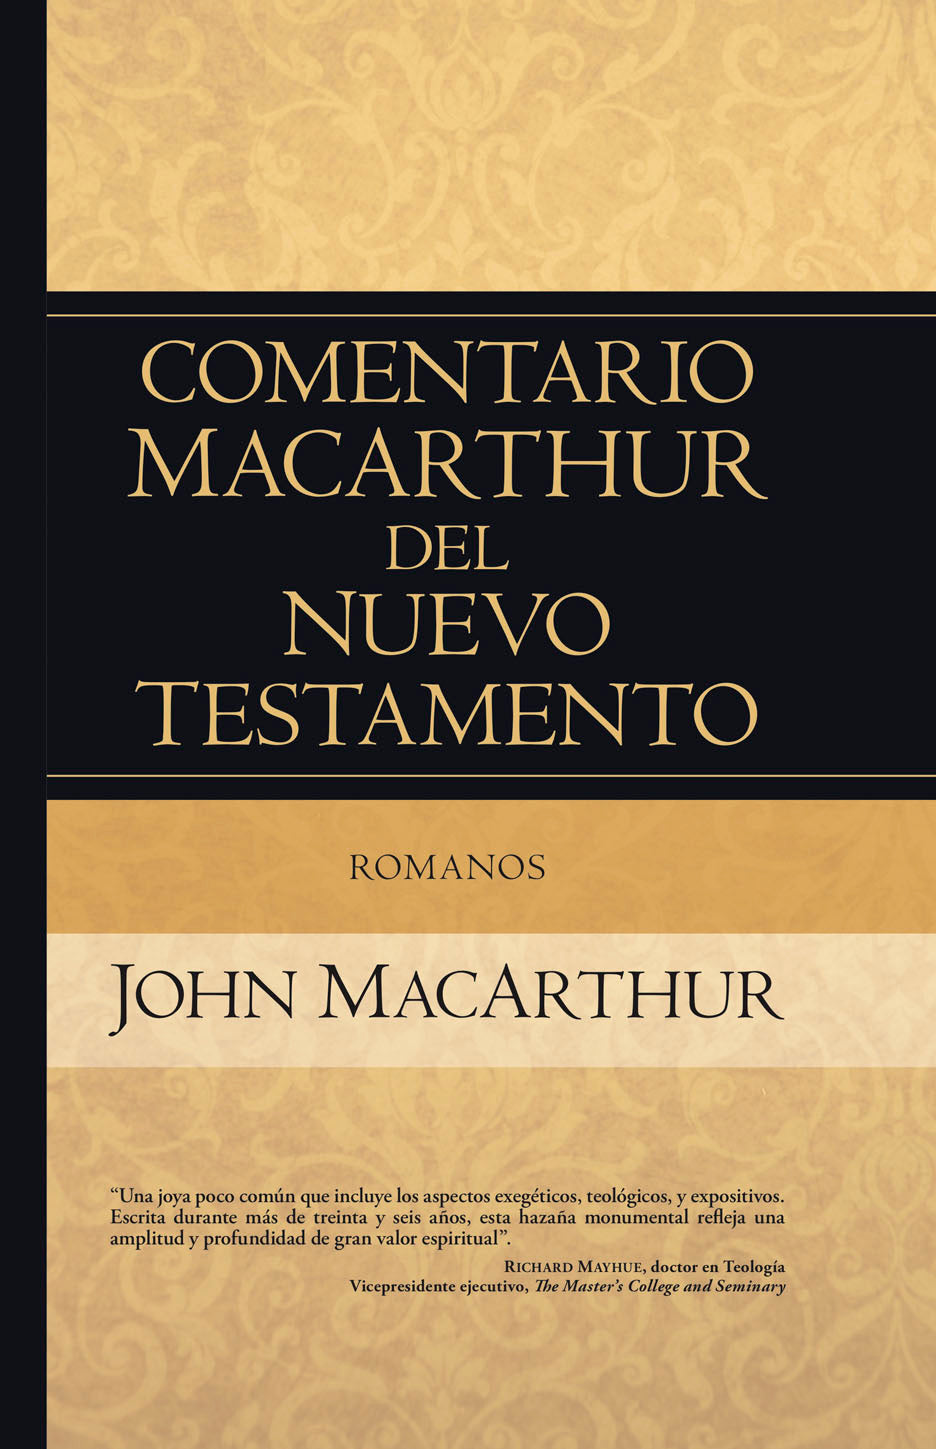 Comentario Macarthur del Nuevo Testamento - Romanos